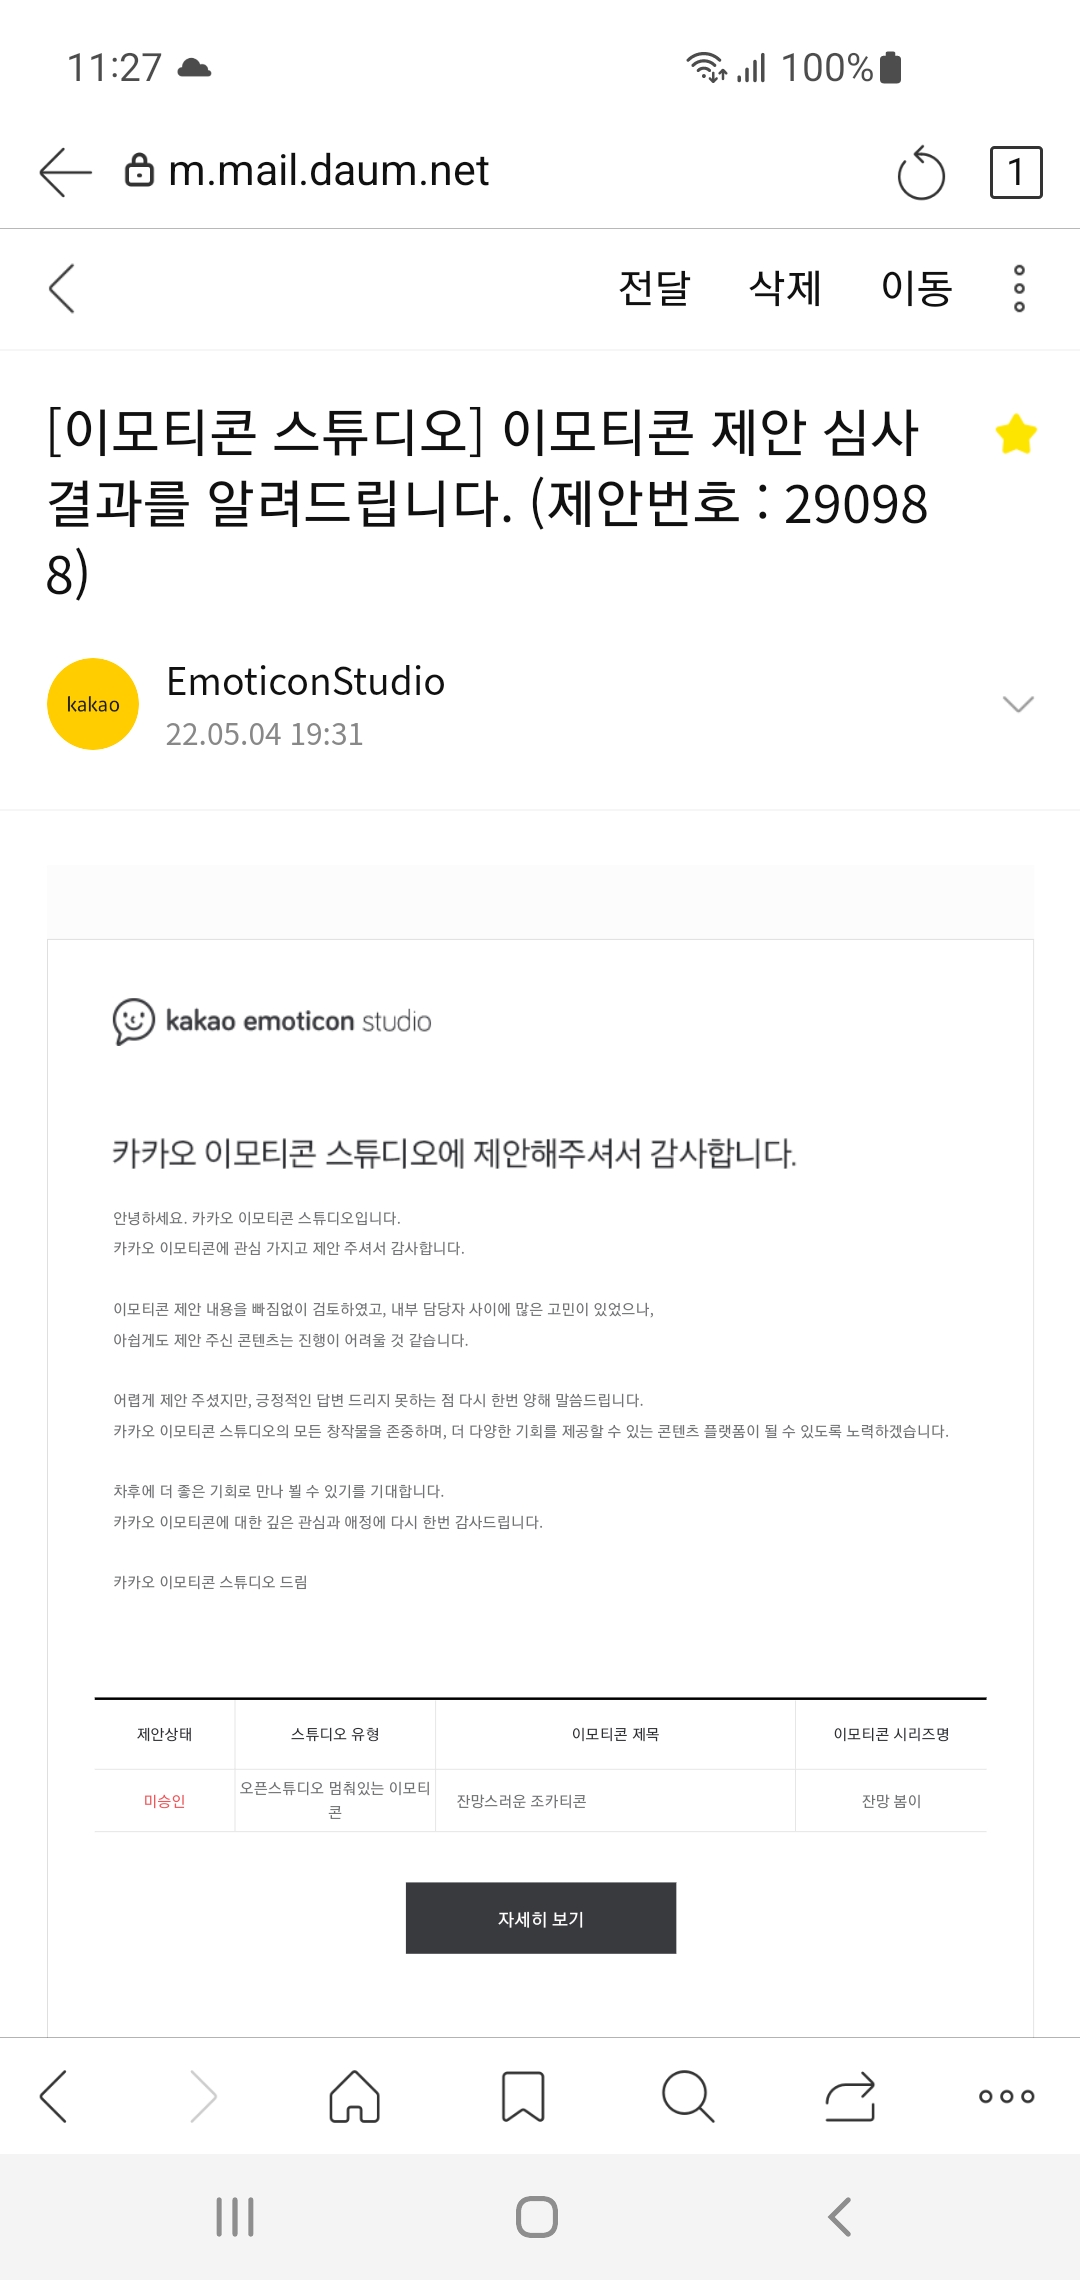 카카오-이모티콘-스튜디오-심사-결과-미승인-메일